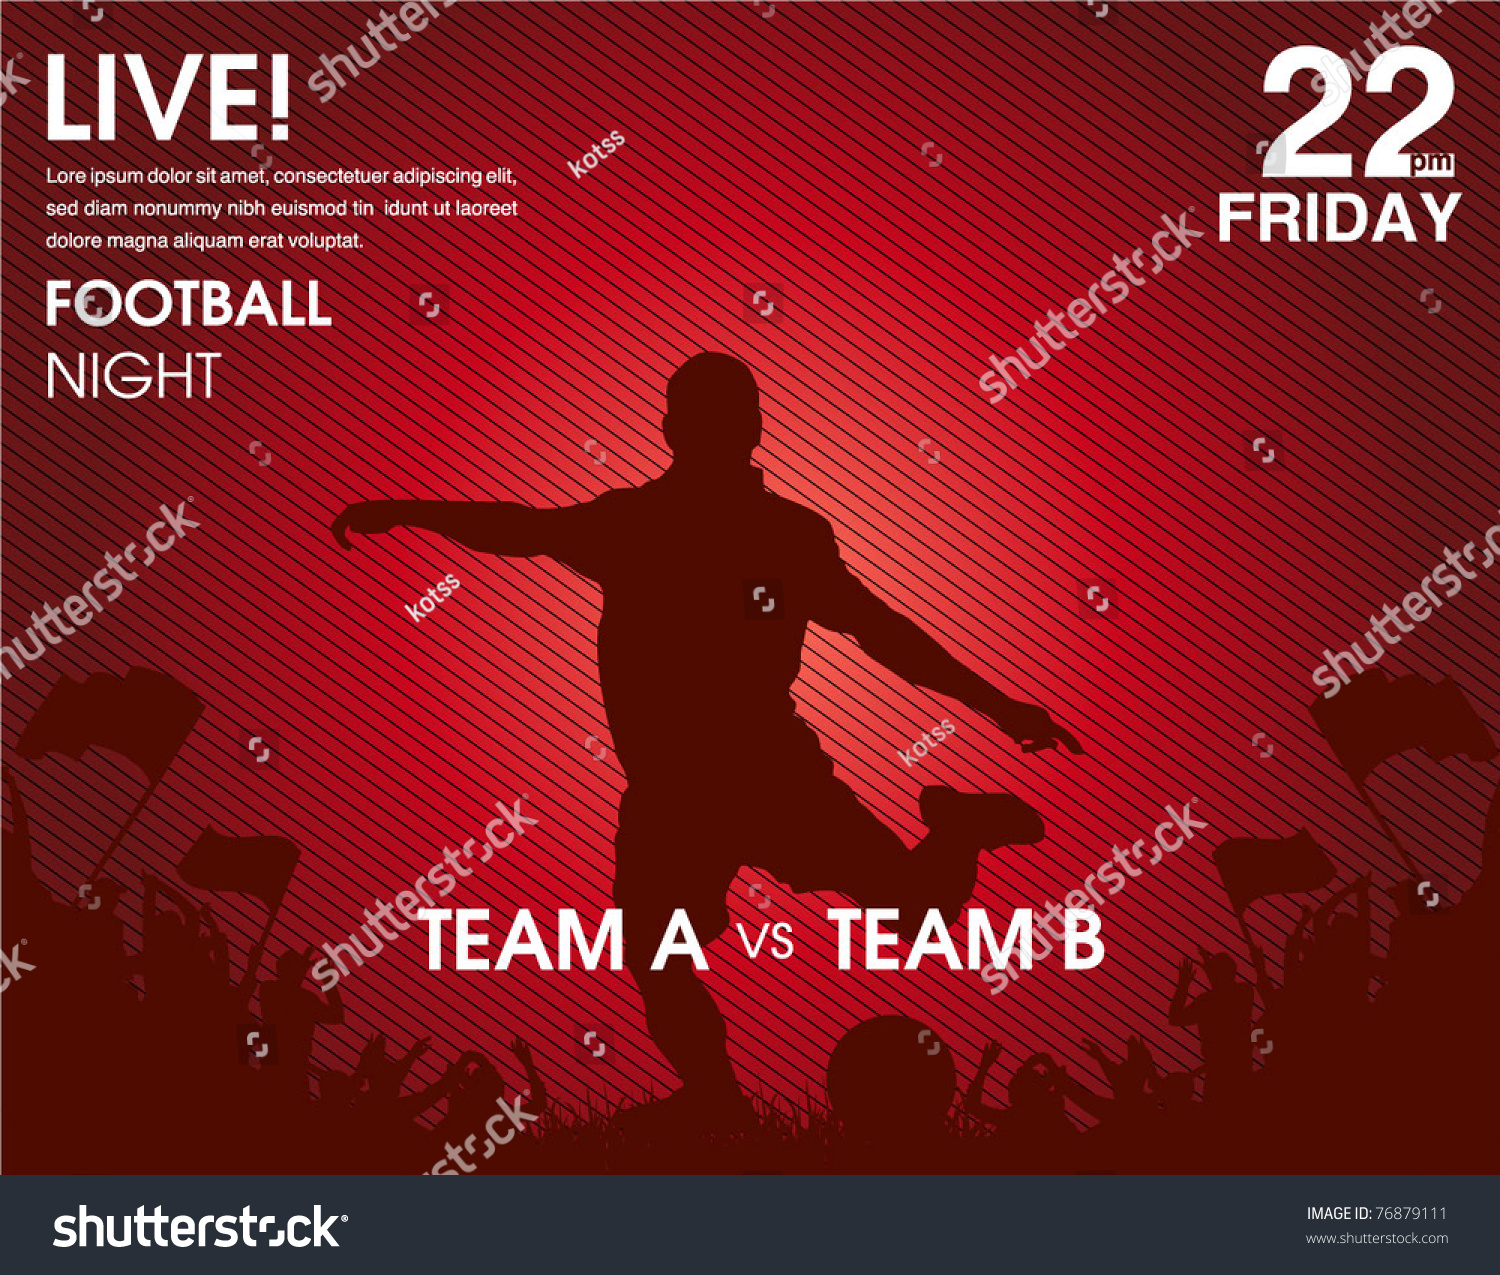 Soccer Match Announcement Poster Stock Vector 76879111 